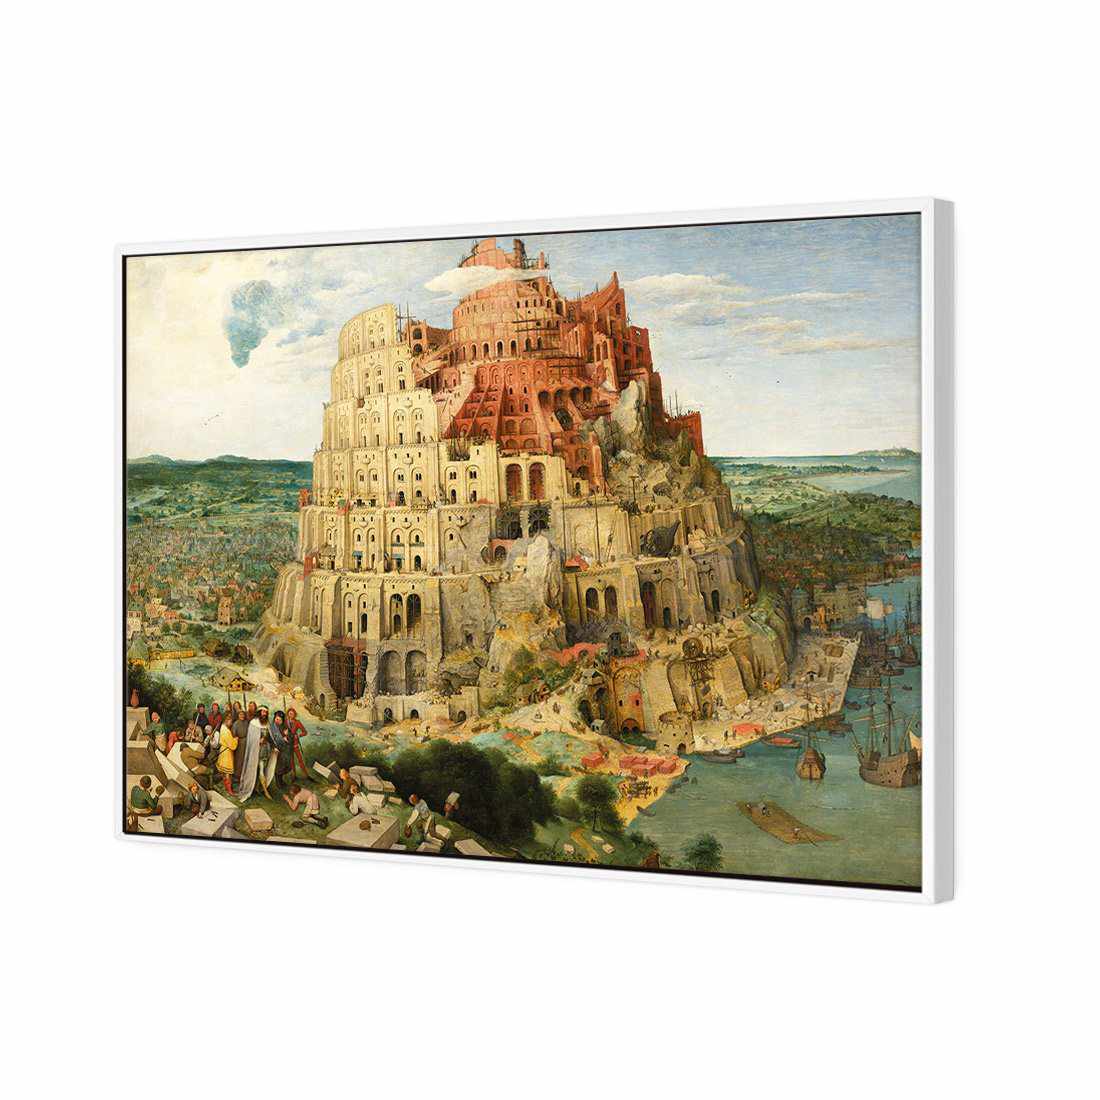 Tower Of Babel - Pieter Bruegel The Elder Canvas Art-Canvas-Wall Art Designs-45x30cm-Canvas - White Frame-Wall Art Designs